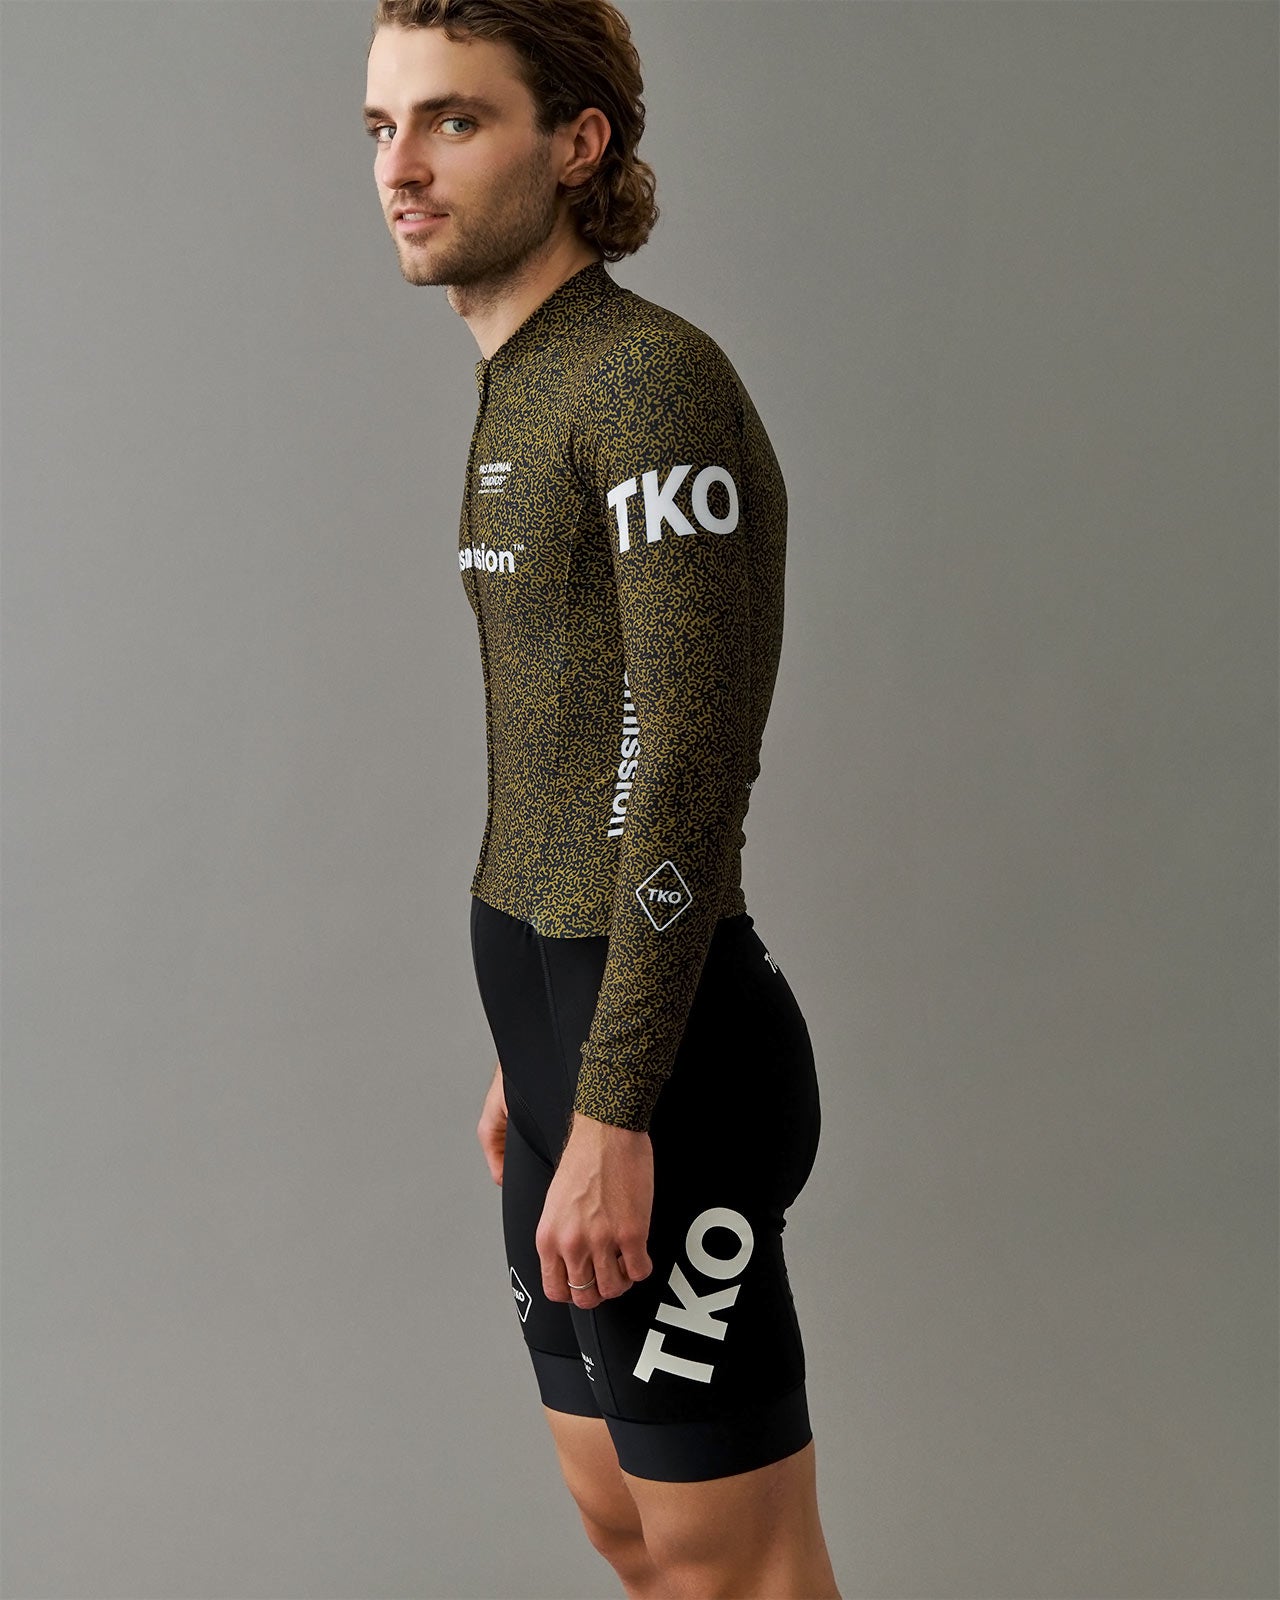 Men's T.K.O. Thermal Speedsuit